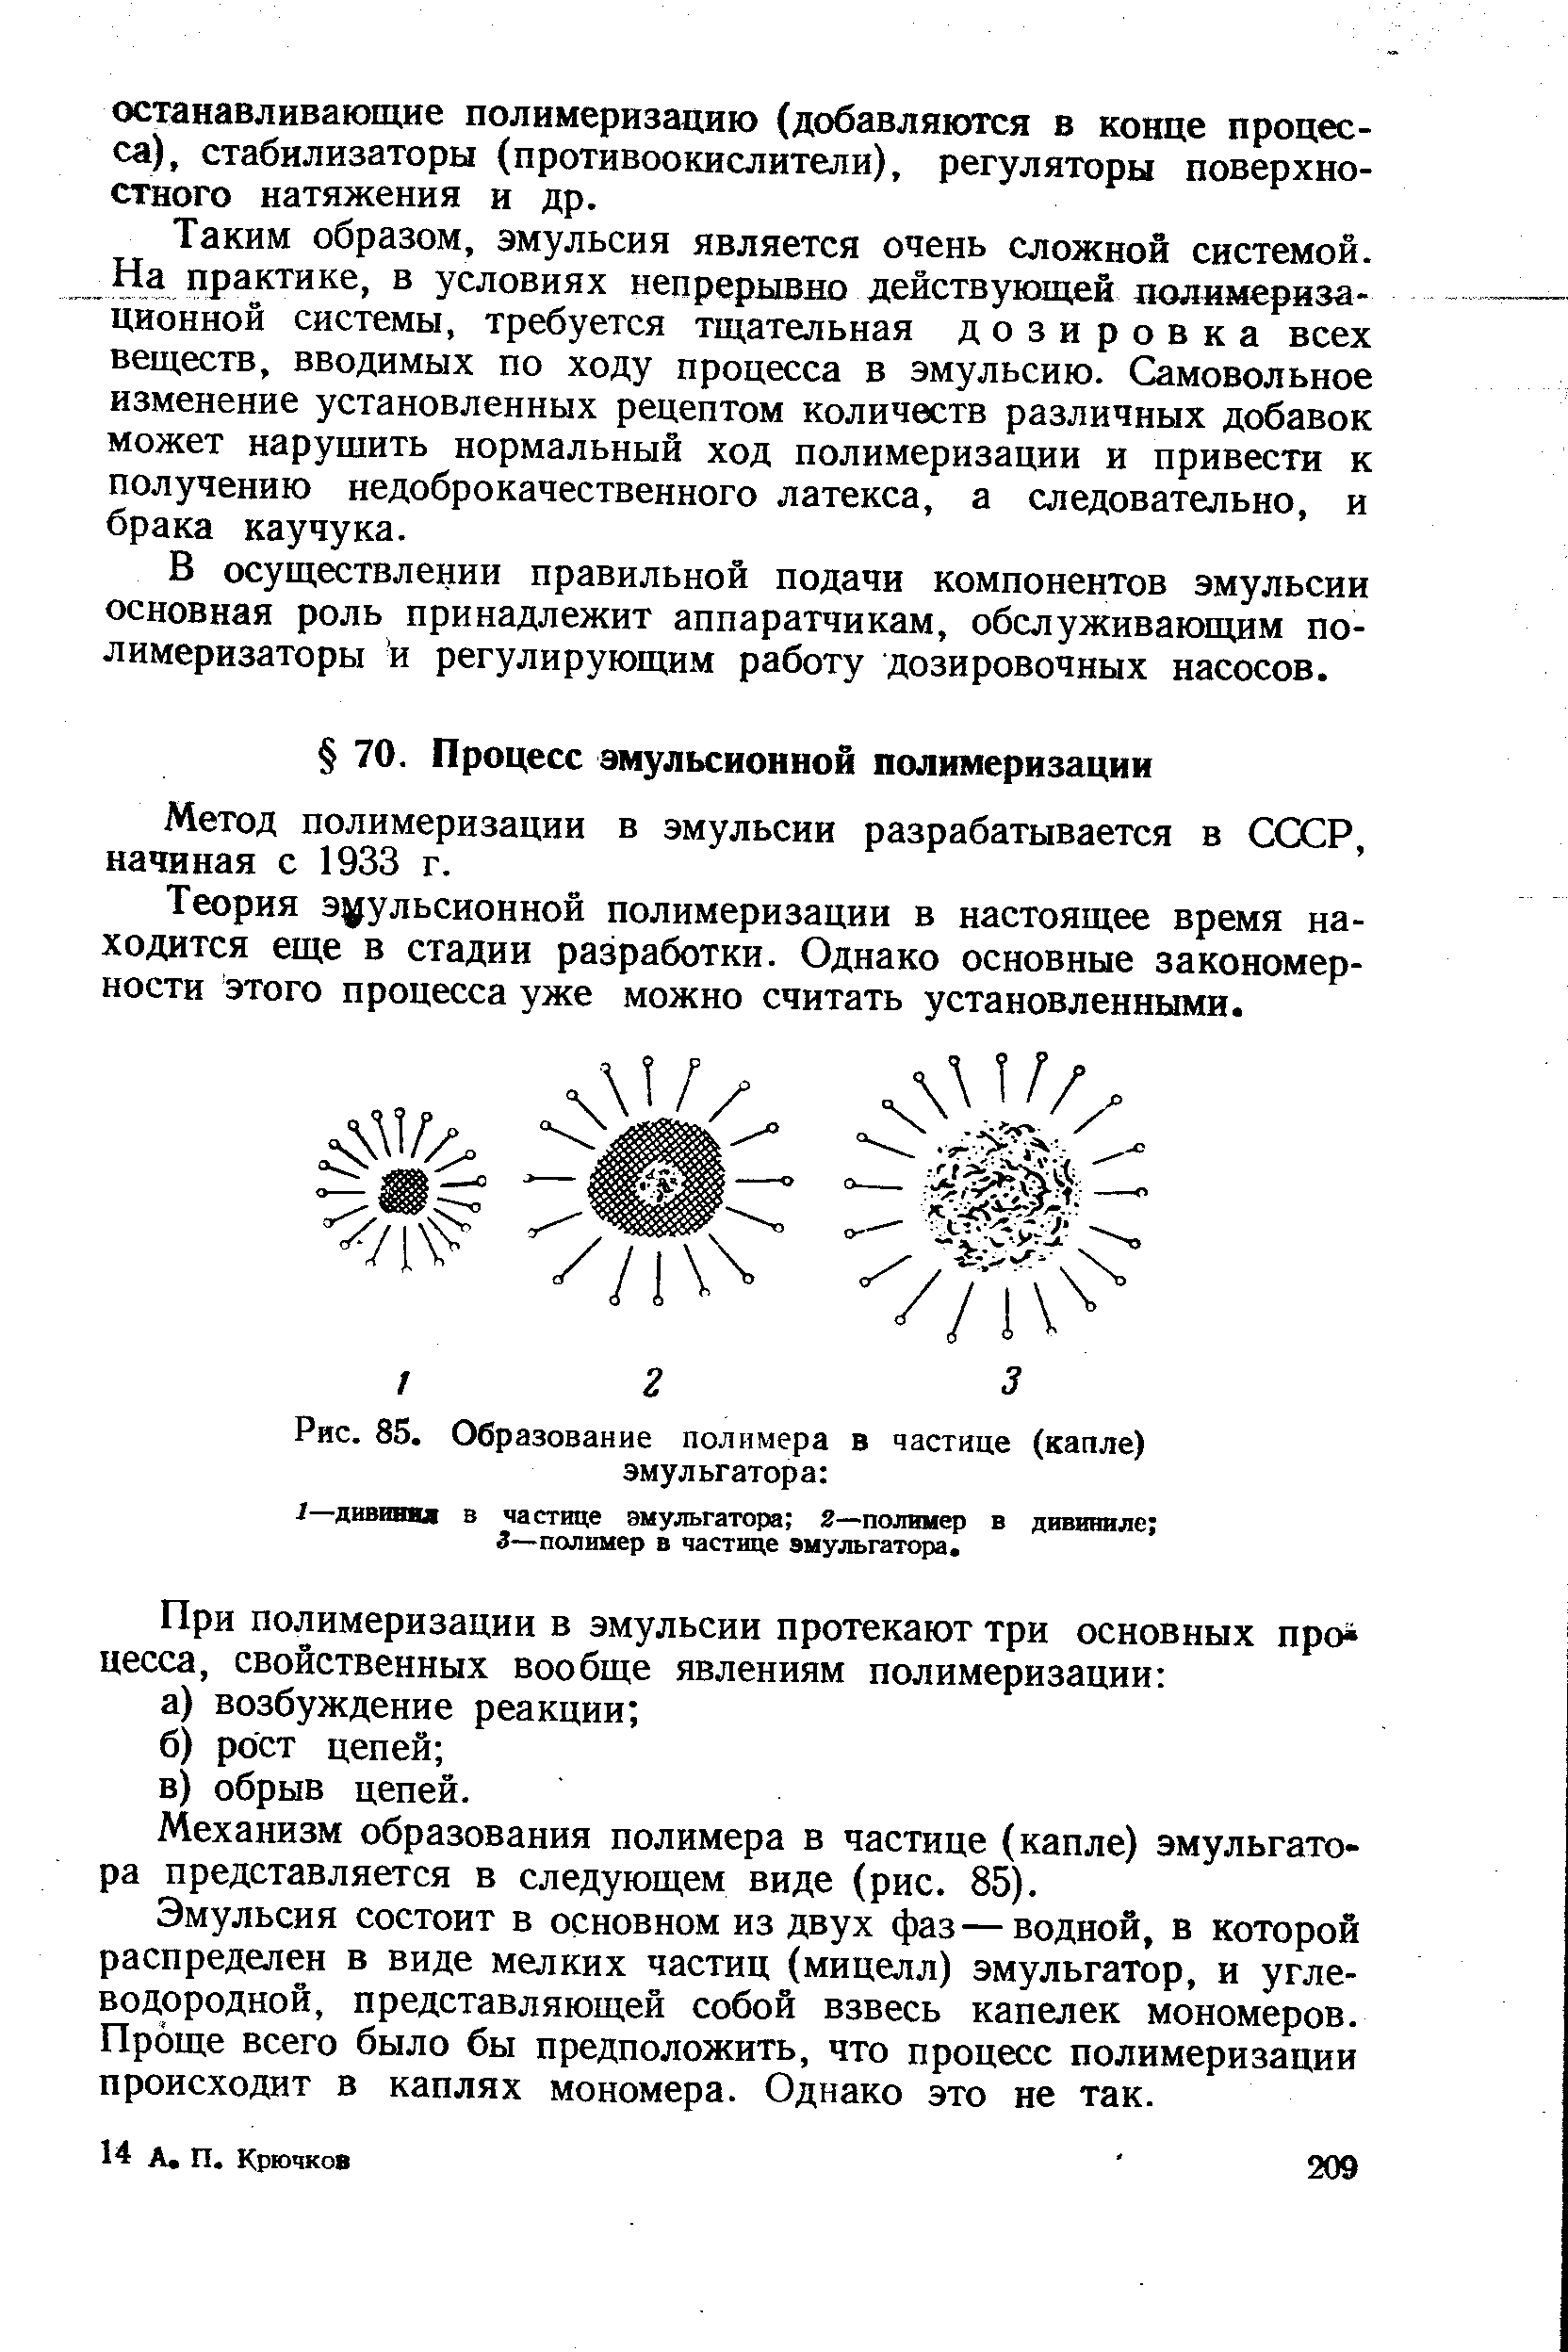 Метод полимеризации в эмульсии разрабатывается в СССР, начиная с 1933 г.